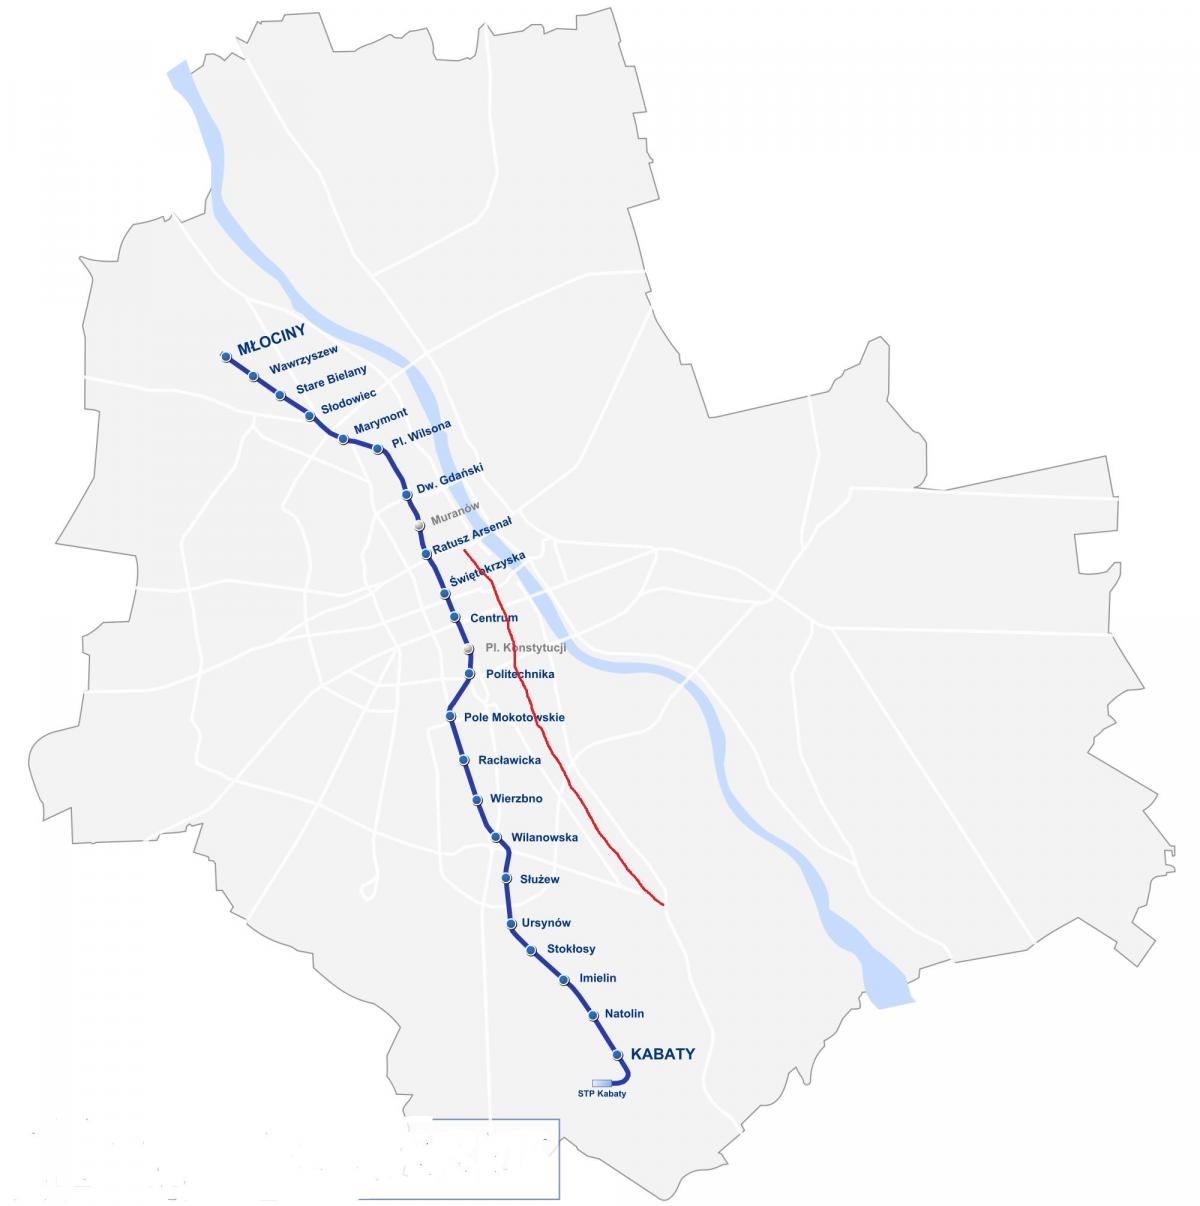 Mappa della strada reale di Varsavia 